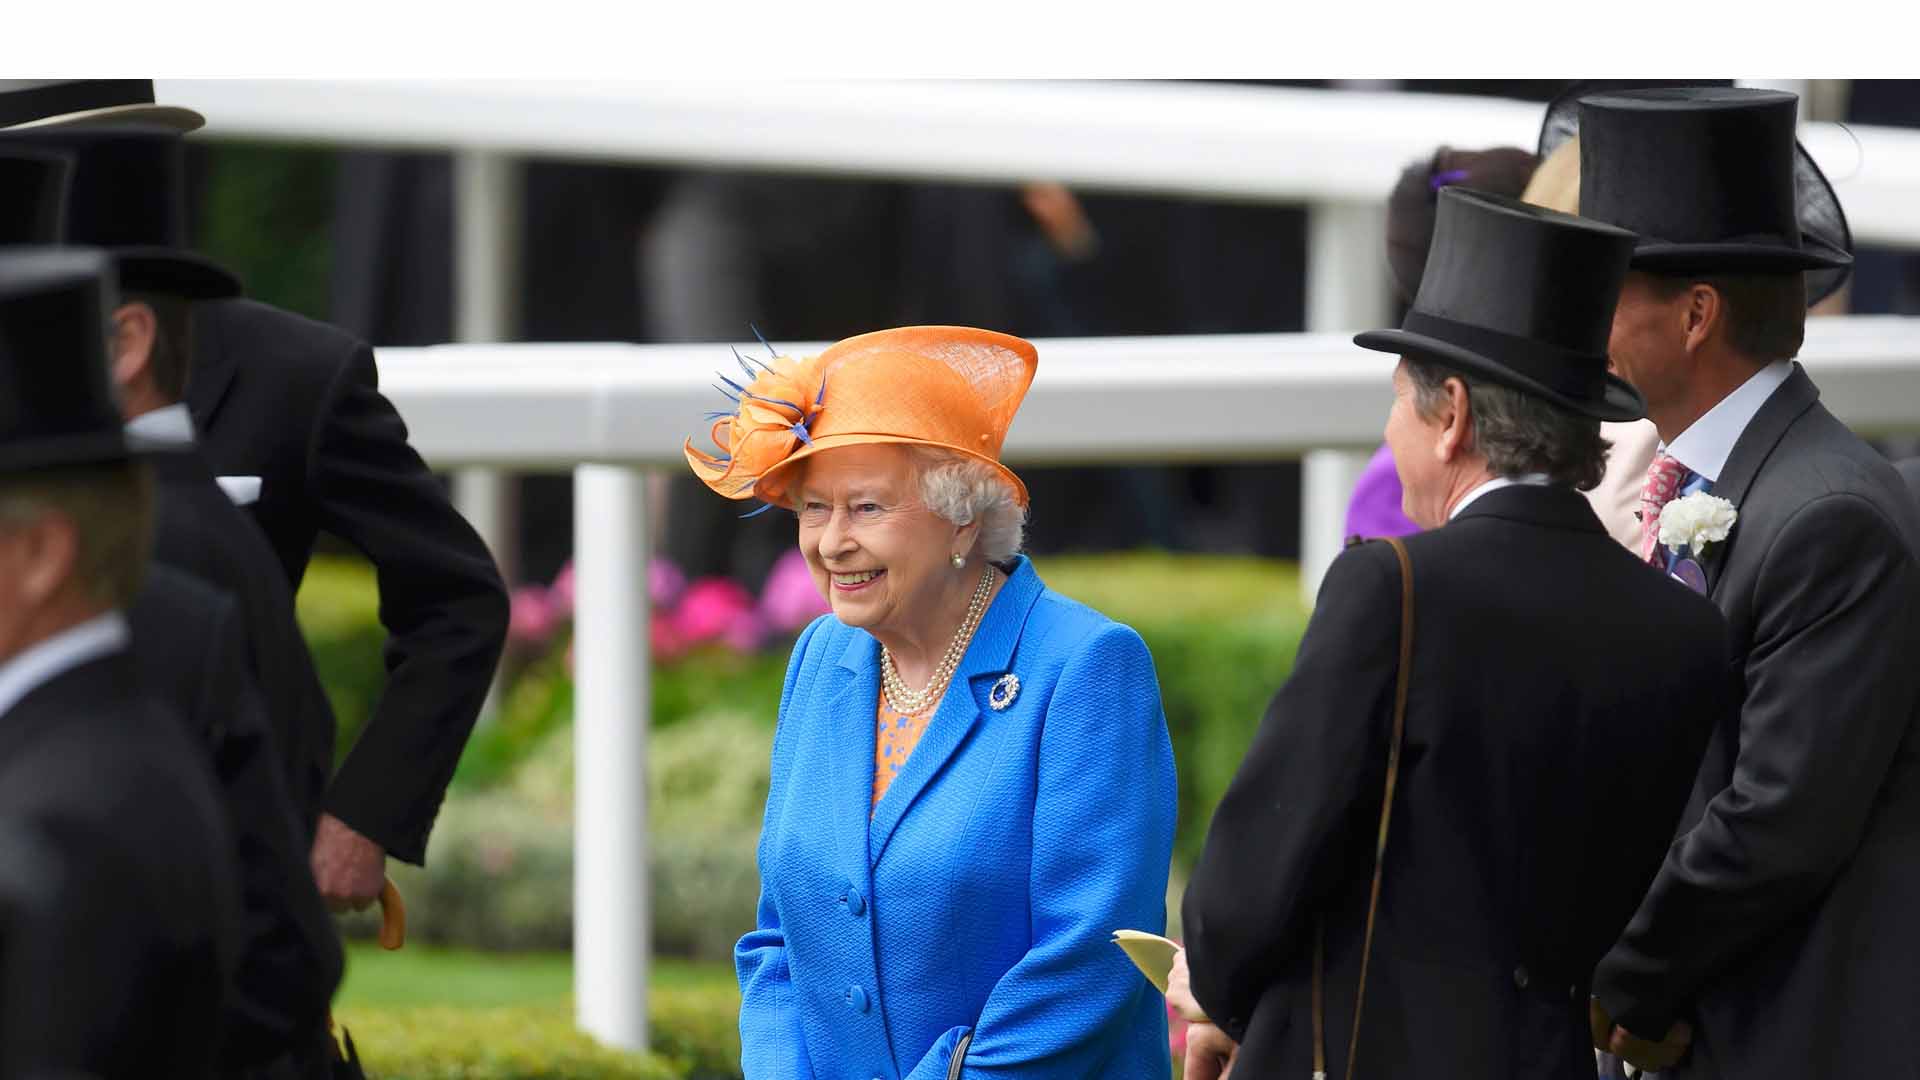 En medio de extravagantes sombreros la monarca aposto por la sencillez en un hermoso tono cítrico que contrasto con el azul de la realeza